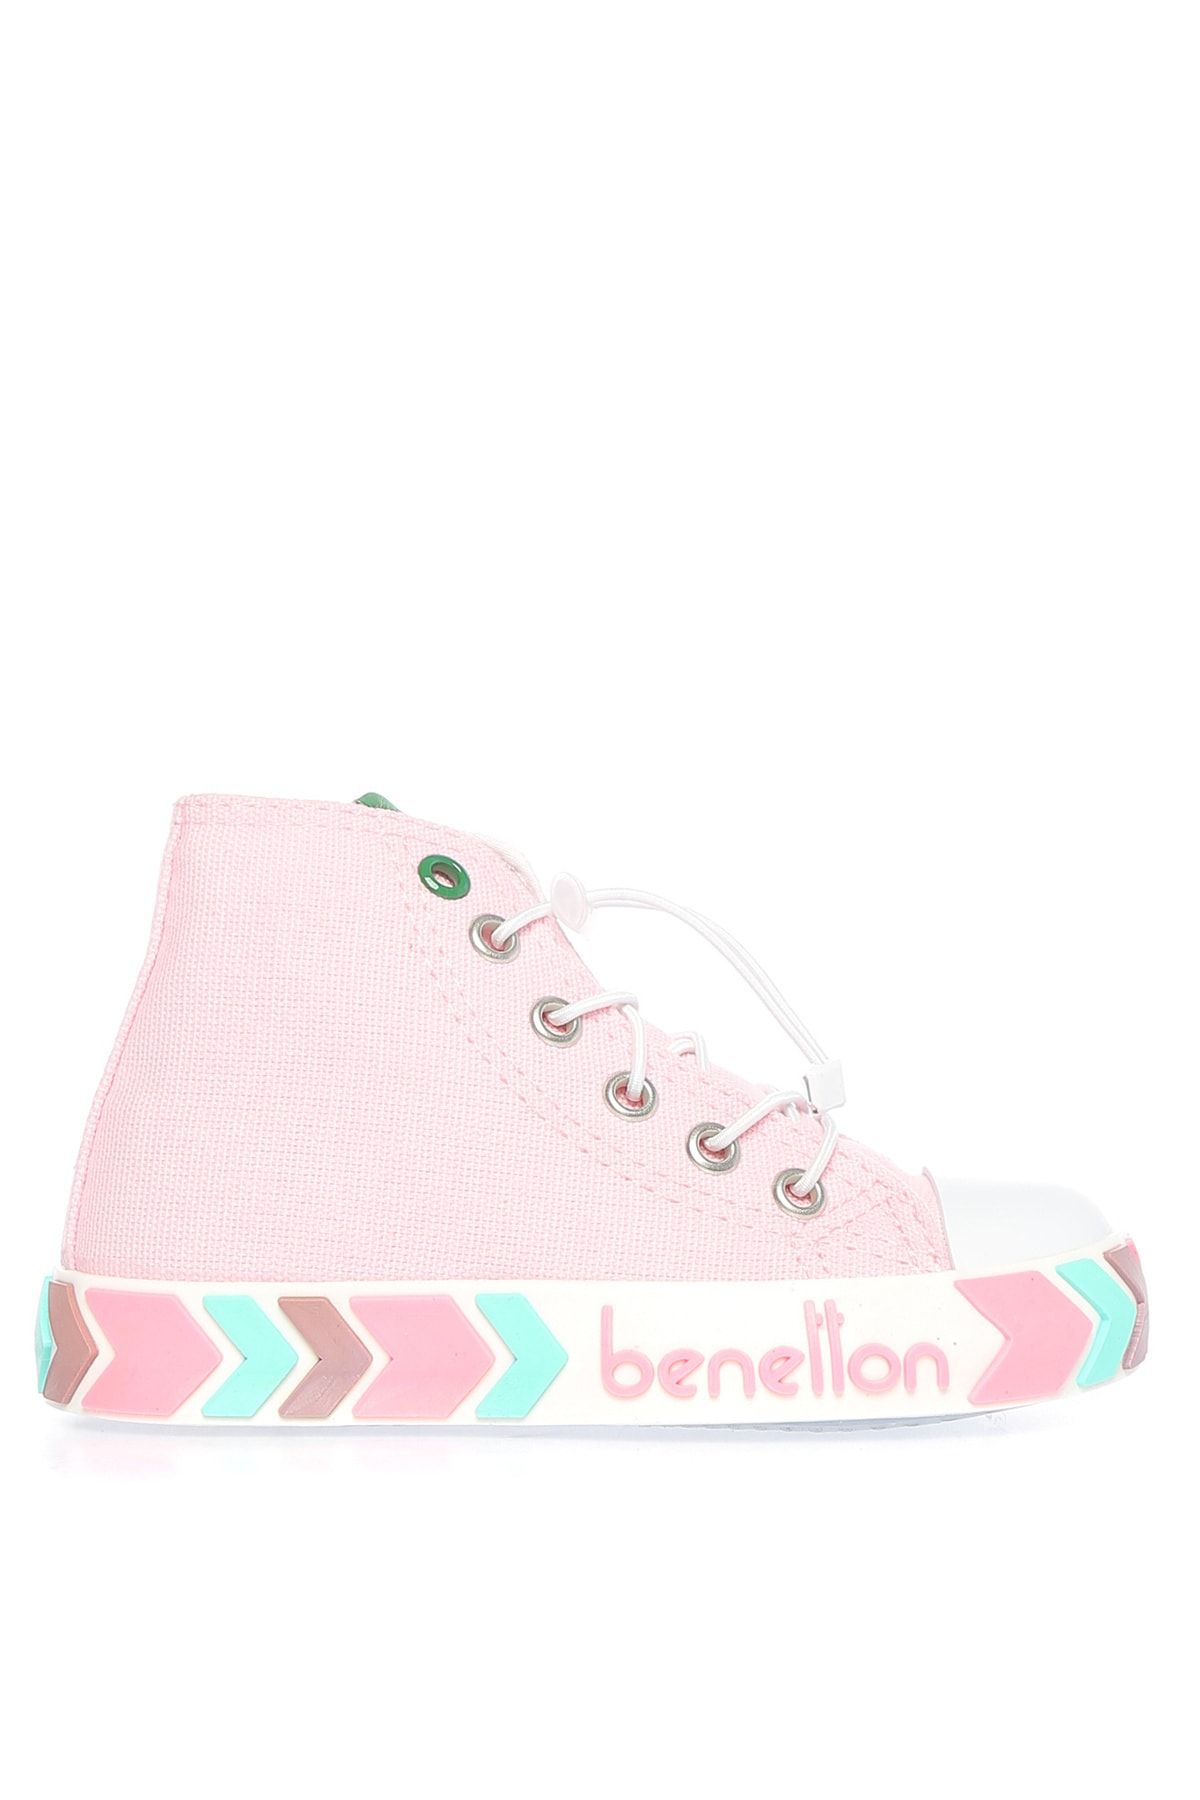 Benetton Pembe Kız Çocuk Yürüyüş Ayakkabısı BN-30647 96-Pembe